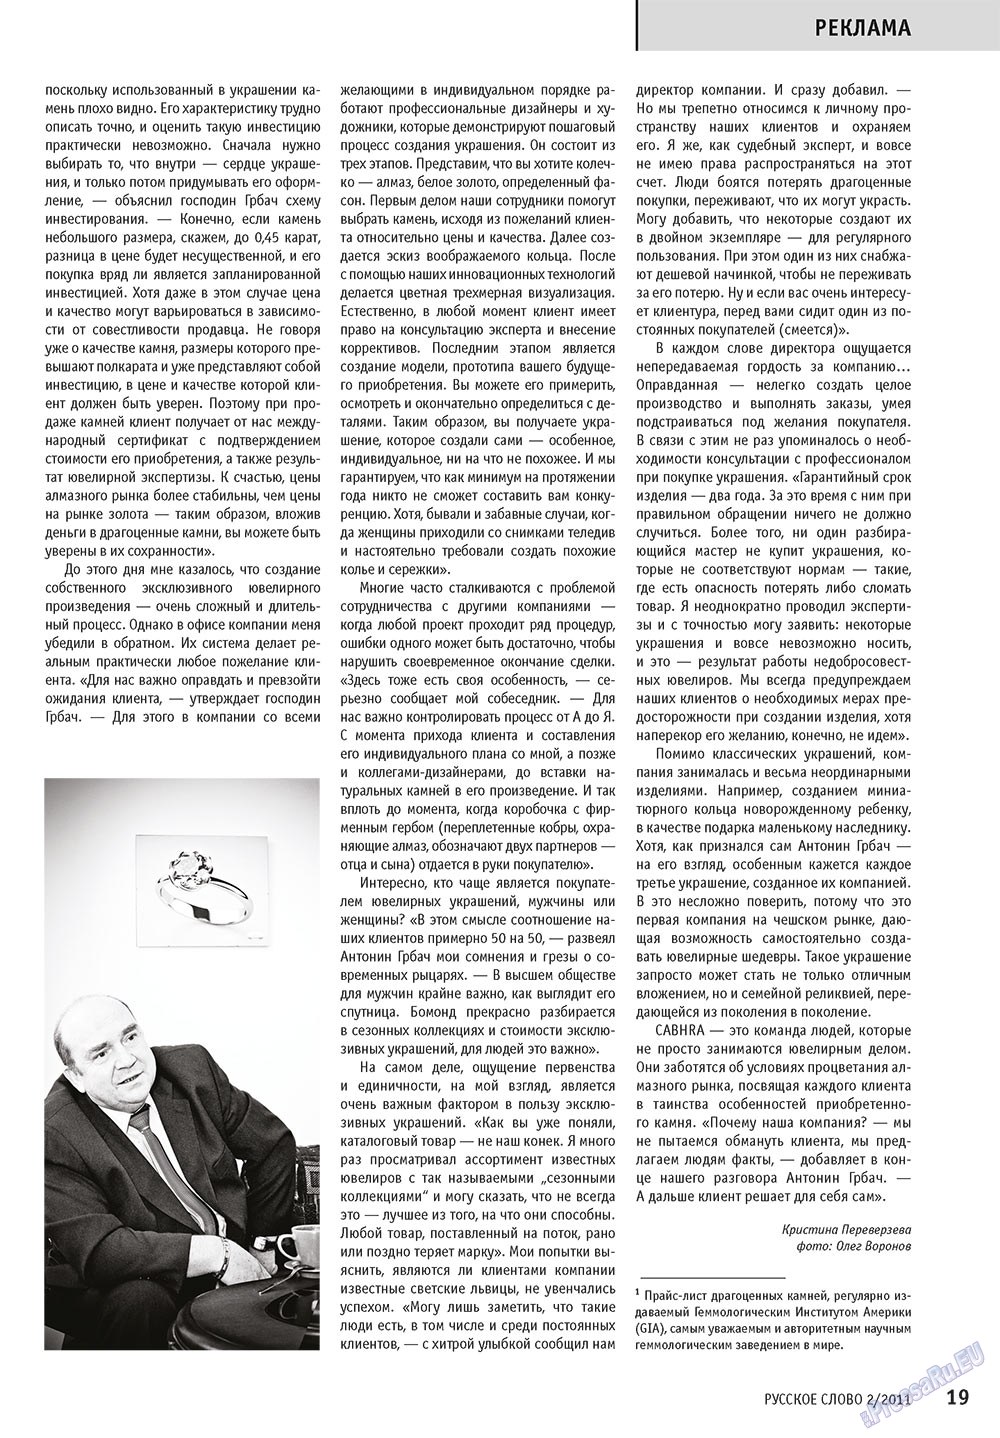 Русское слово, журнал. 2011 №2 стр.21